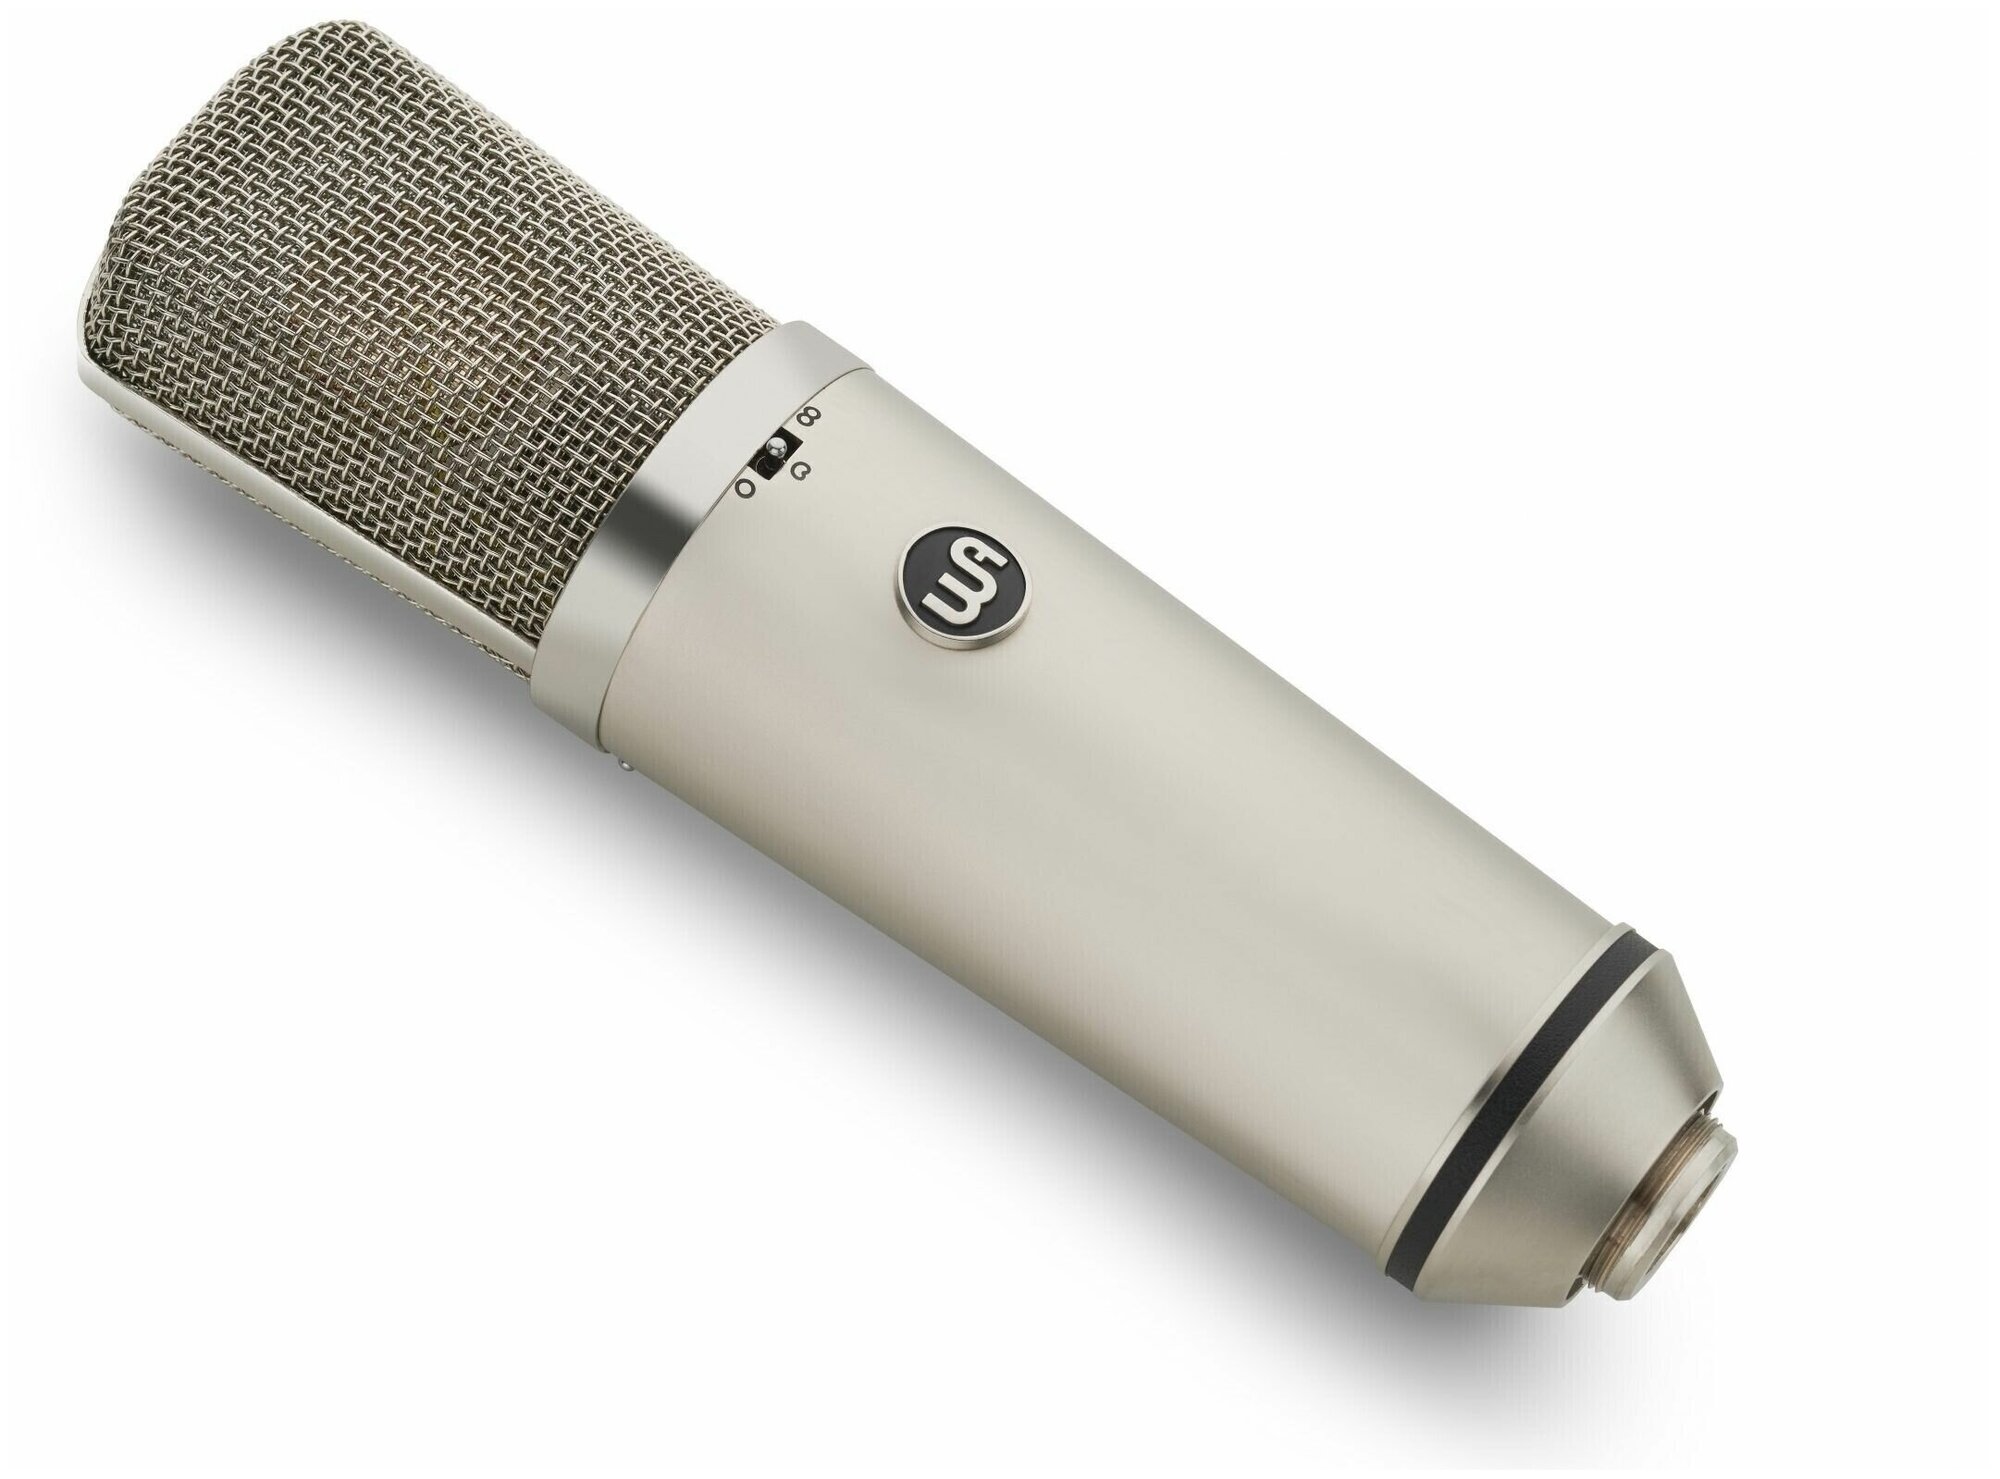 Микрофон студийный конденсаторный Warm Audio WA-67